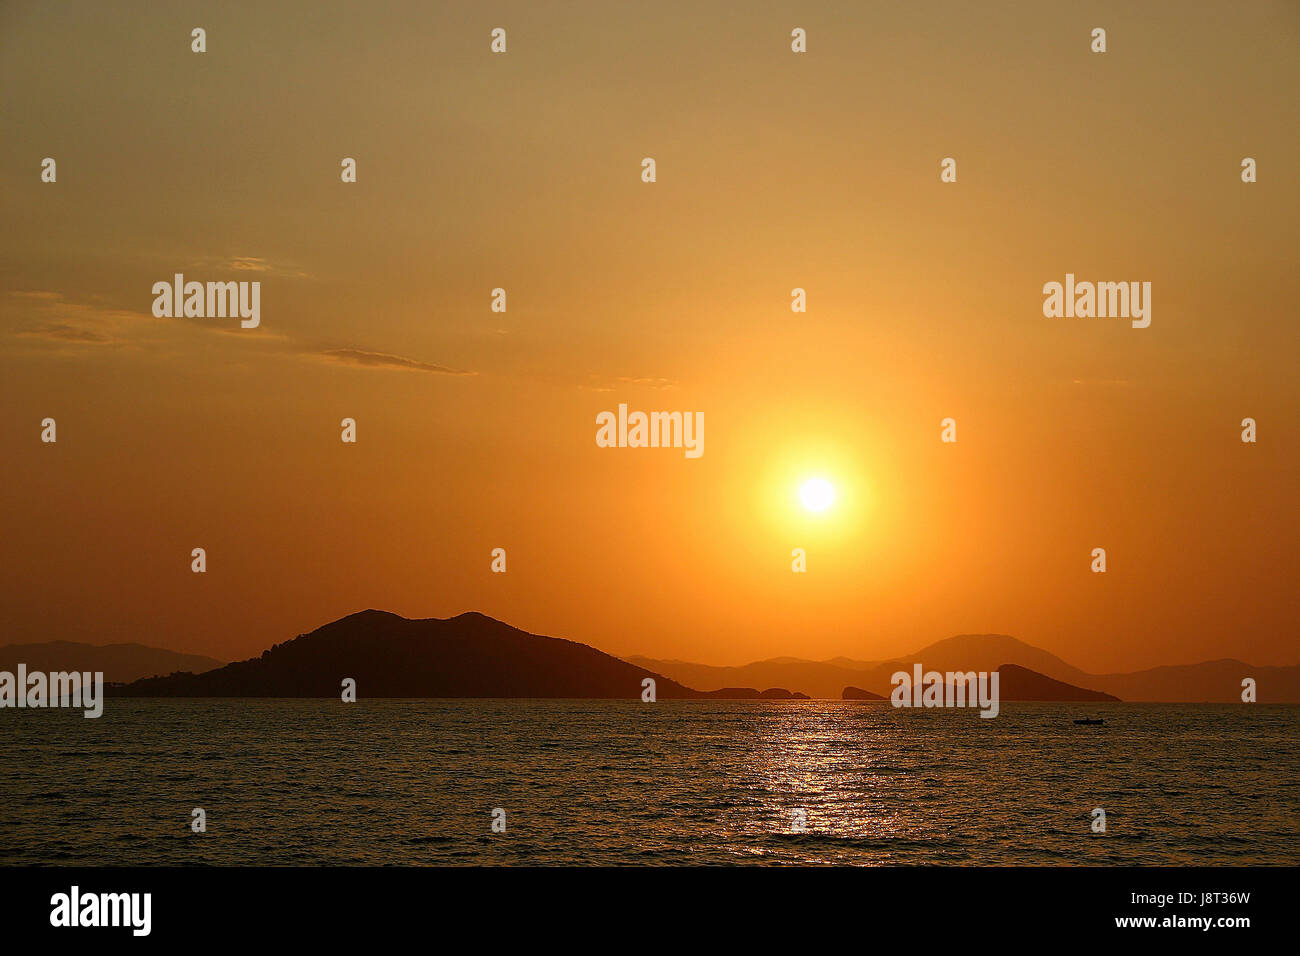 Sunset Coast, Turchia, Sunset Coast, Turchia fethiye, lykien, fethiye, Foto Stock